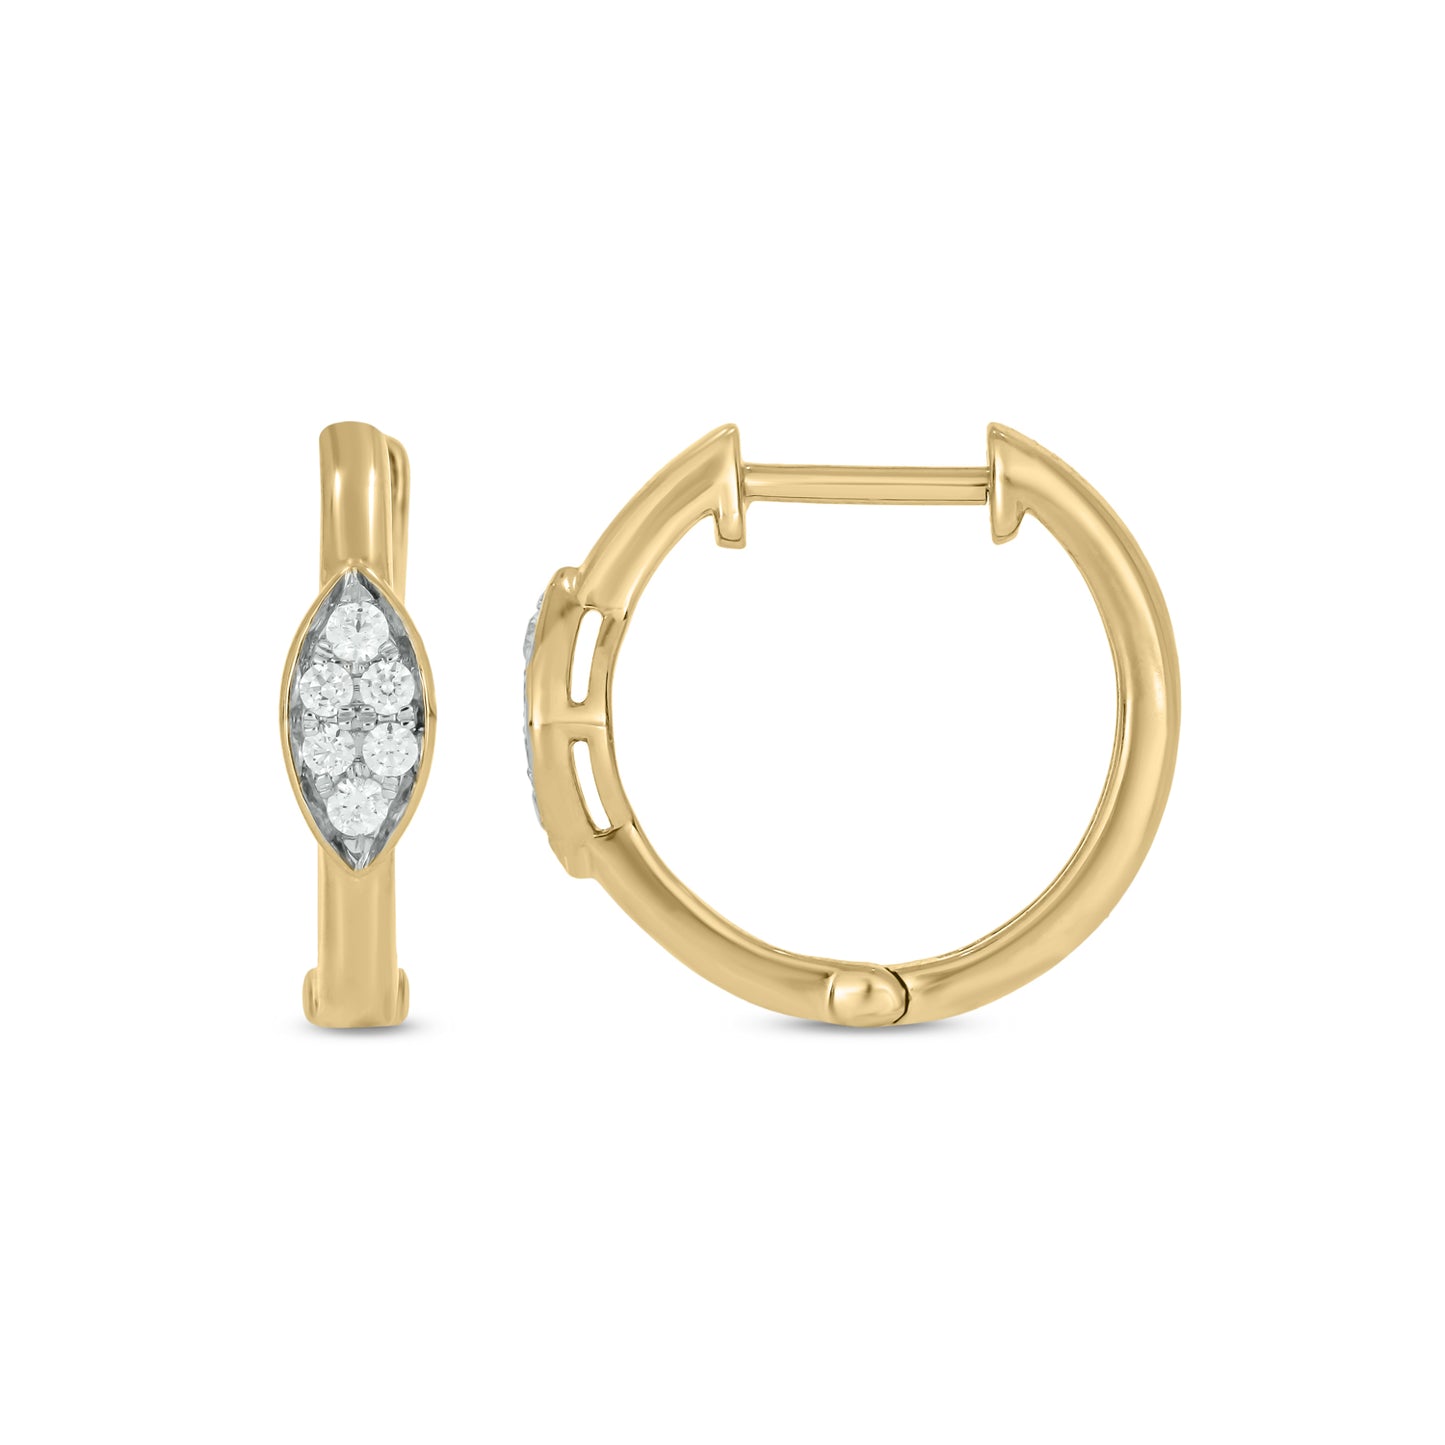 10KT Gold Dainty Diamond Studded Hoop Earrings